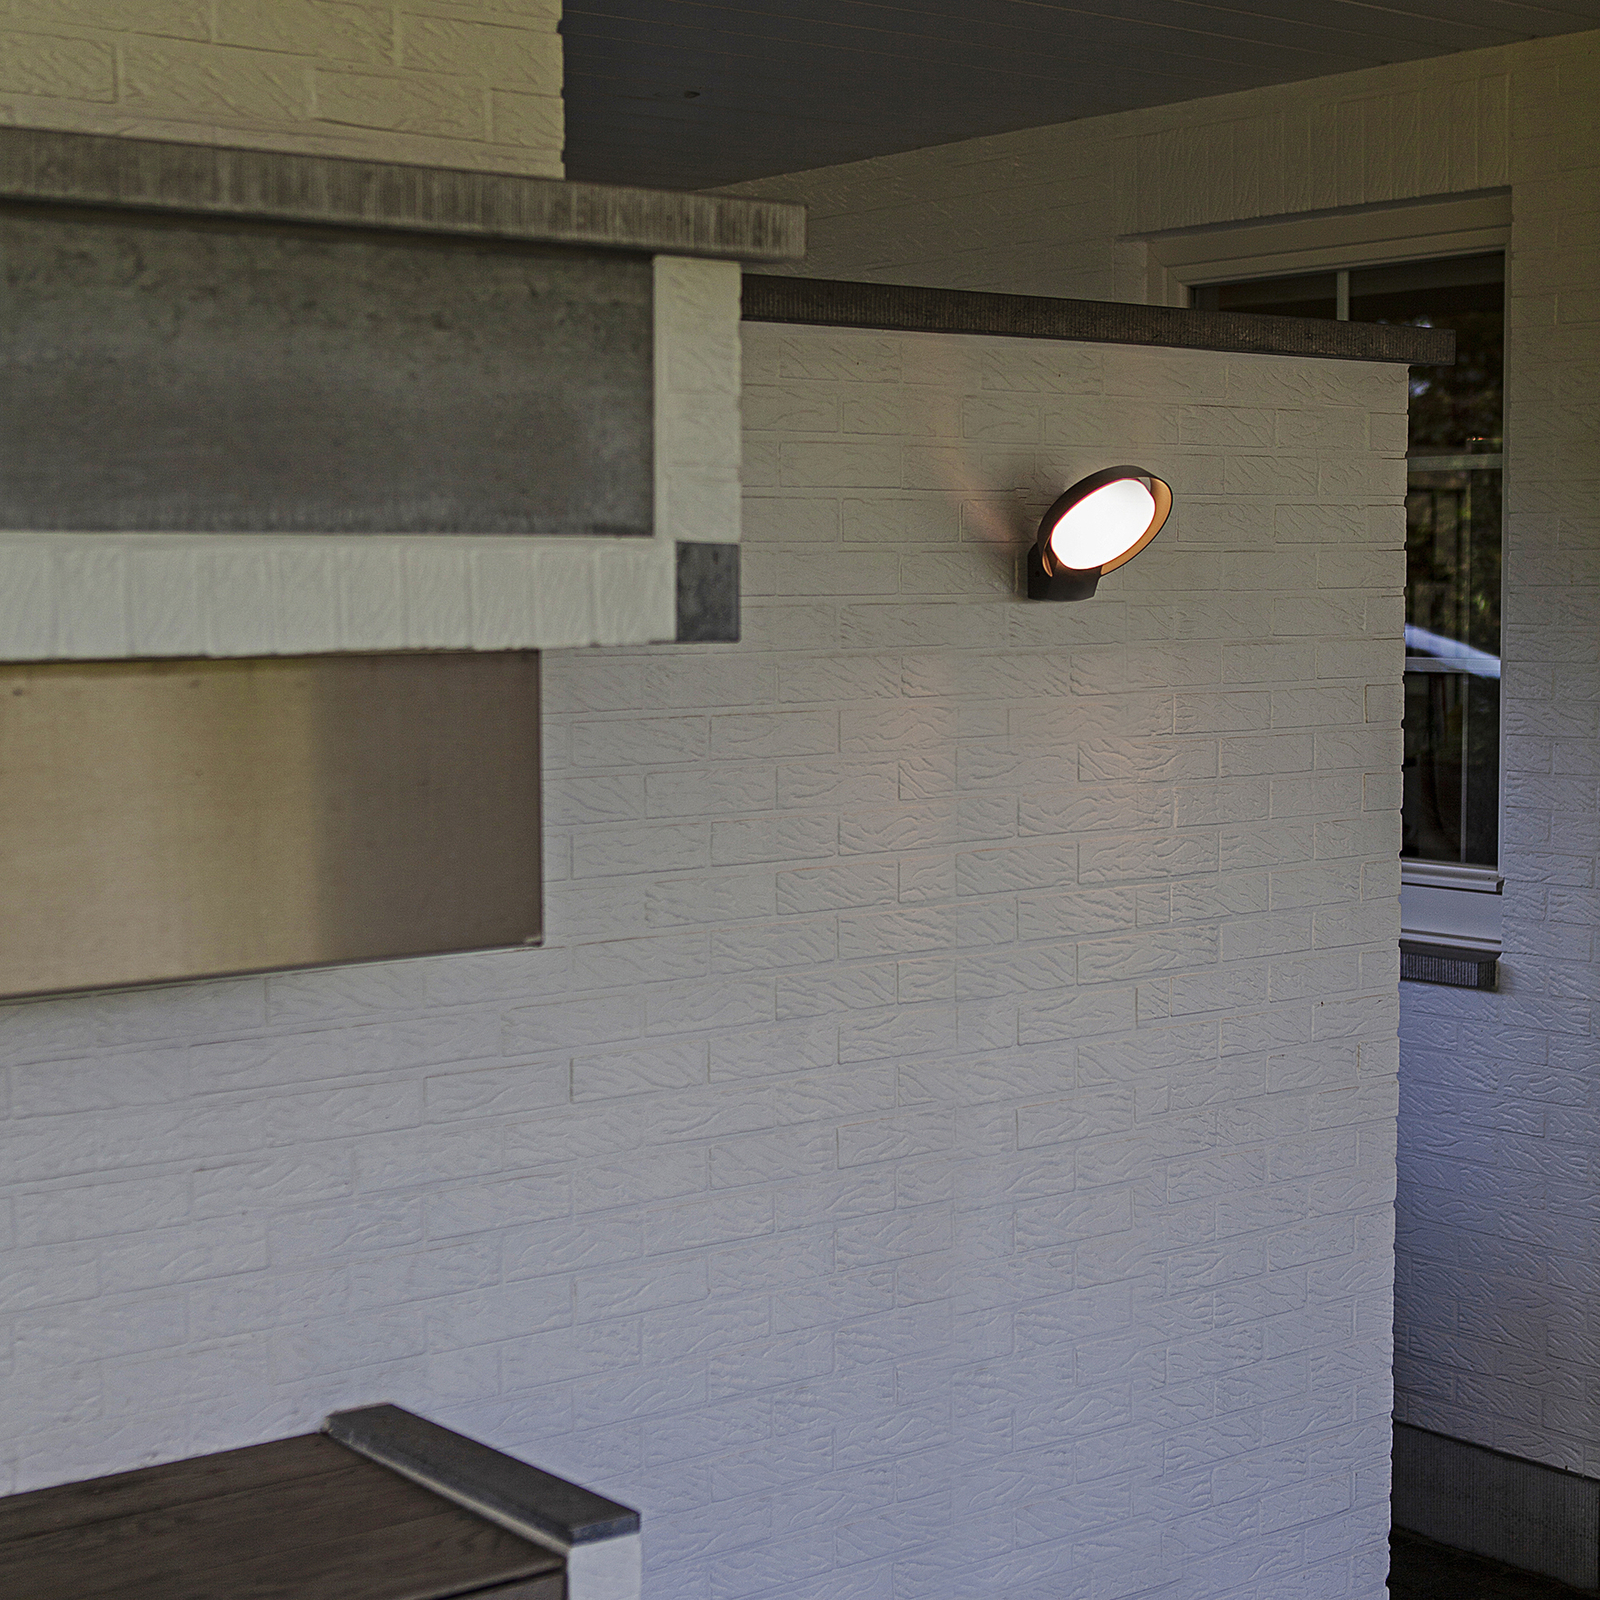 Polo LED outdoor wall light, cast aluminium